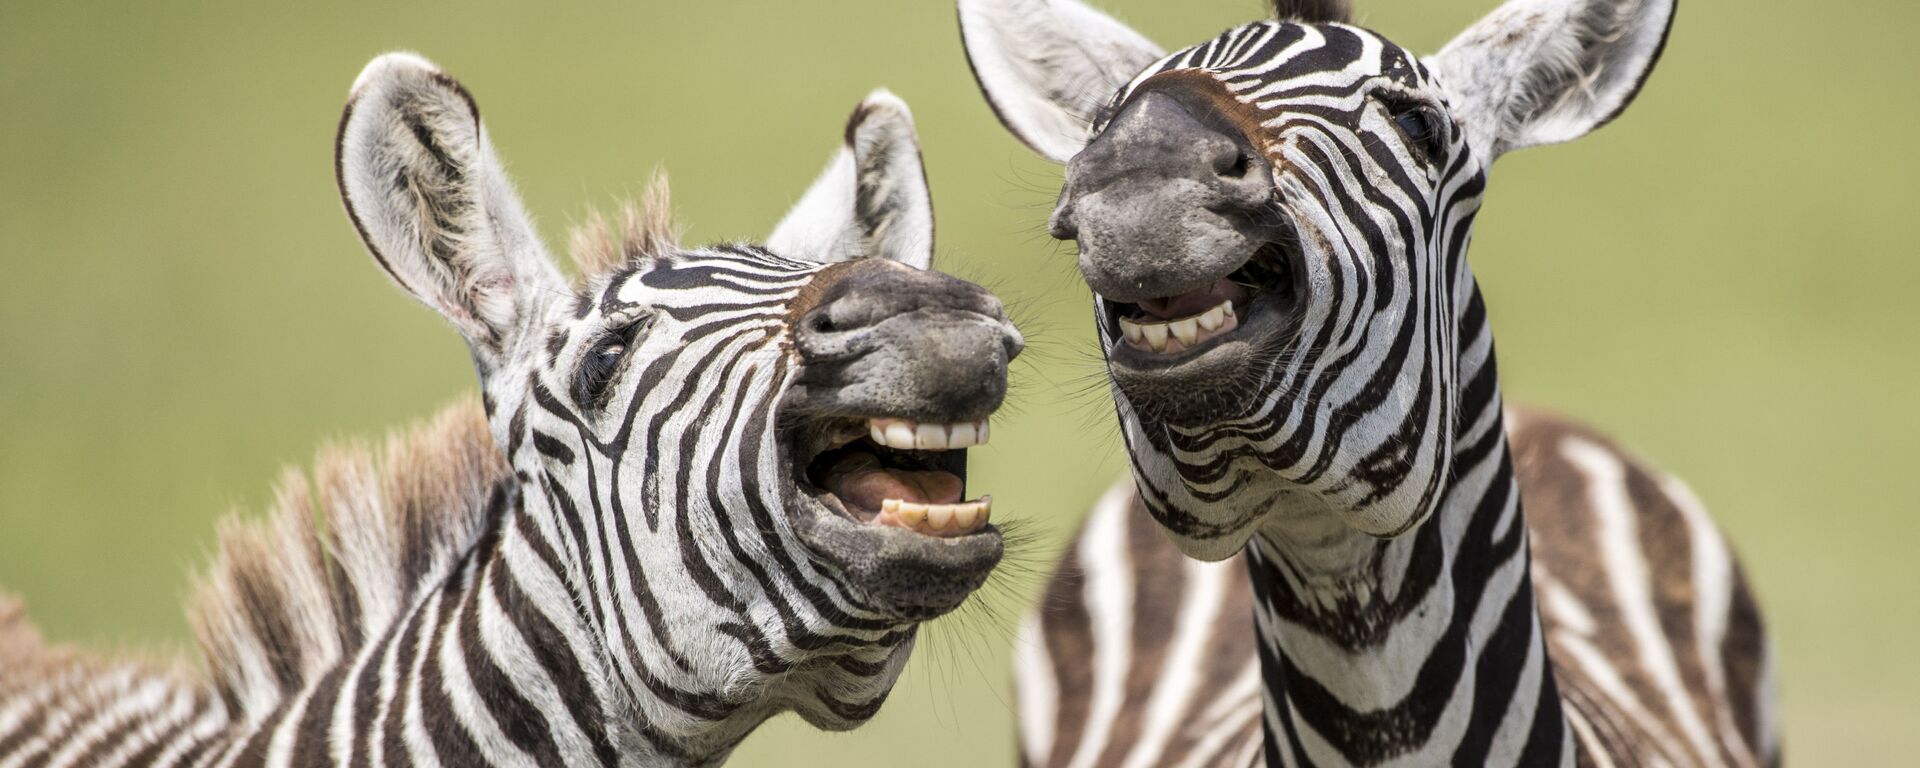 Снимок Laughing Zebra британского фотографа Peter Haygarth, вошедший в список финалистов конкурса Comedy Wildlife Photography Awards - 2019 - Sputnik Латвия, 1920, 17.09.2019